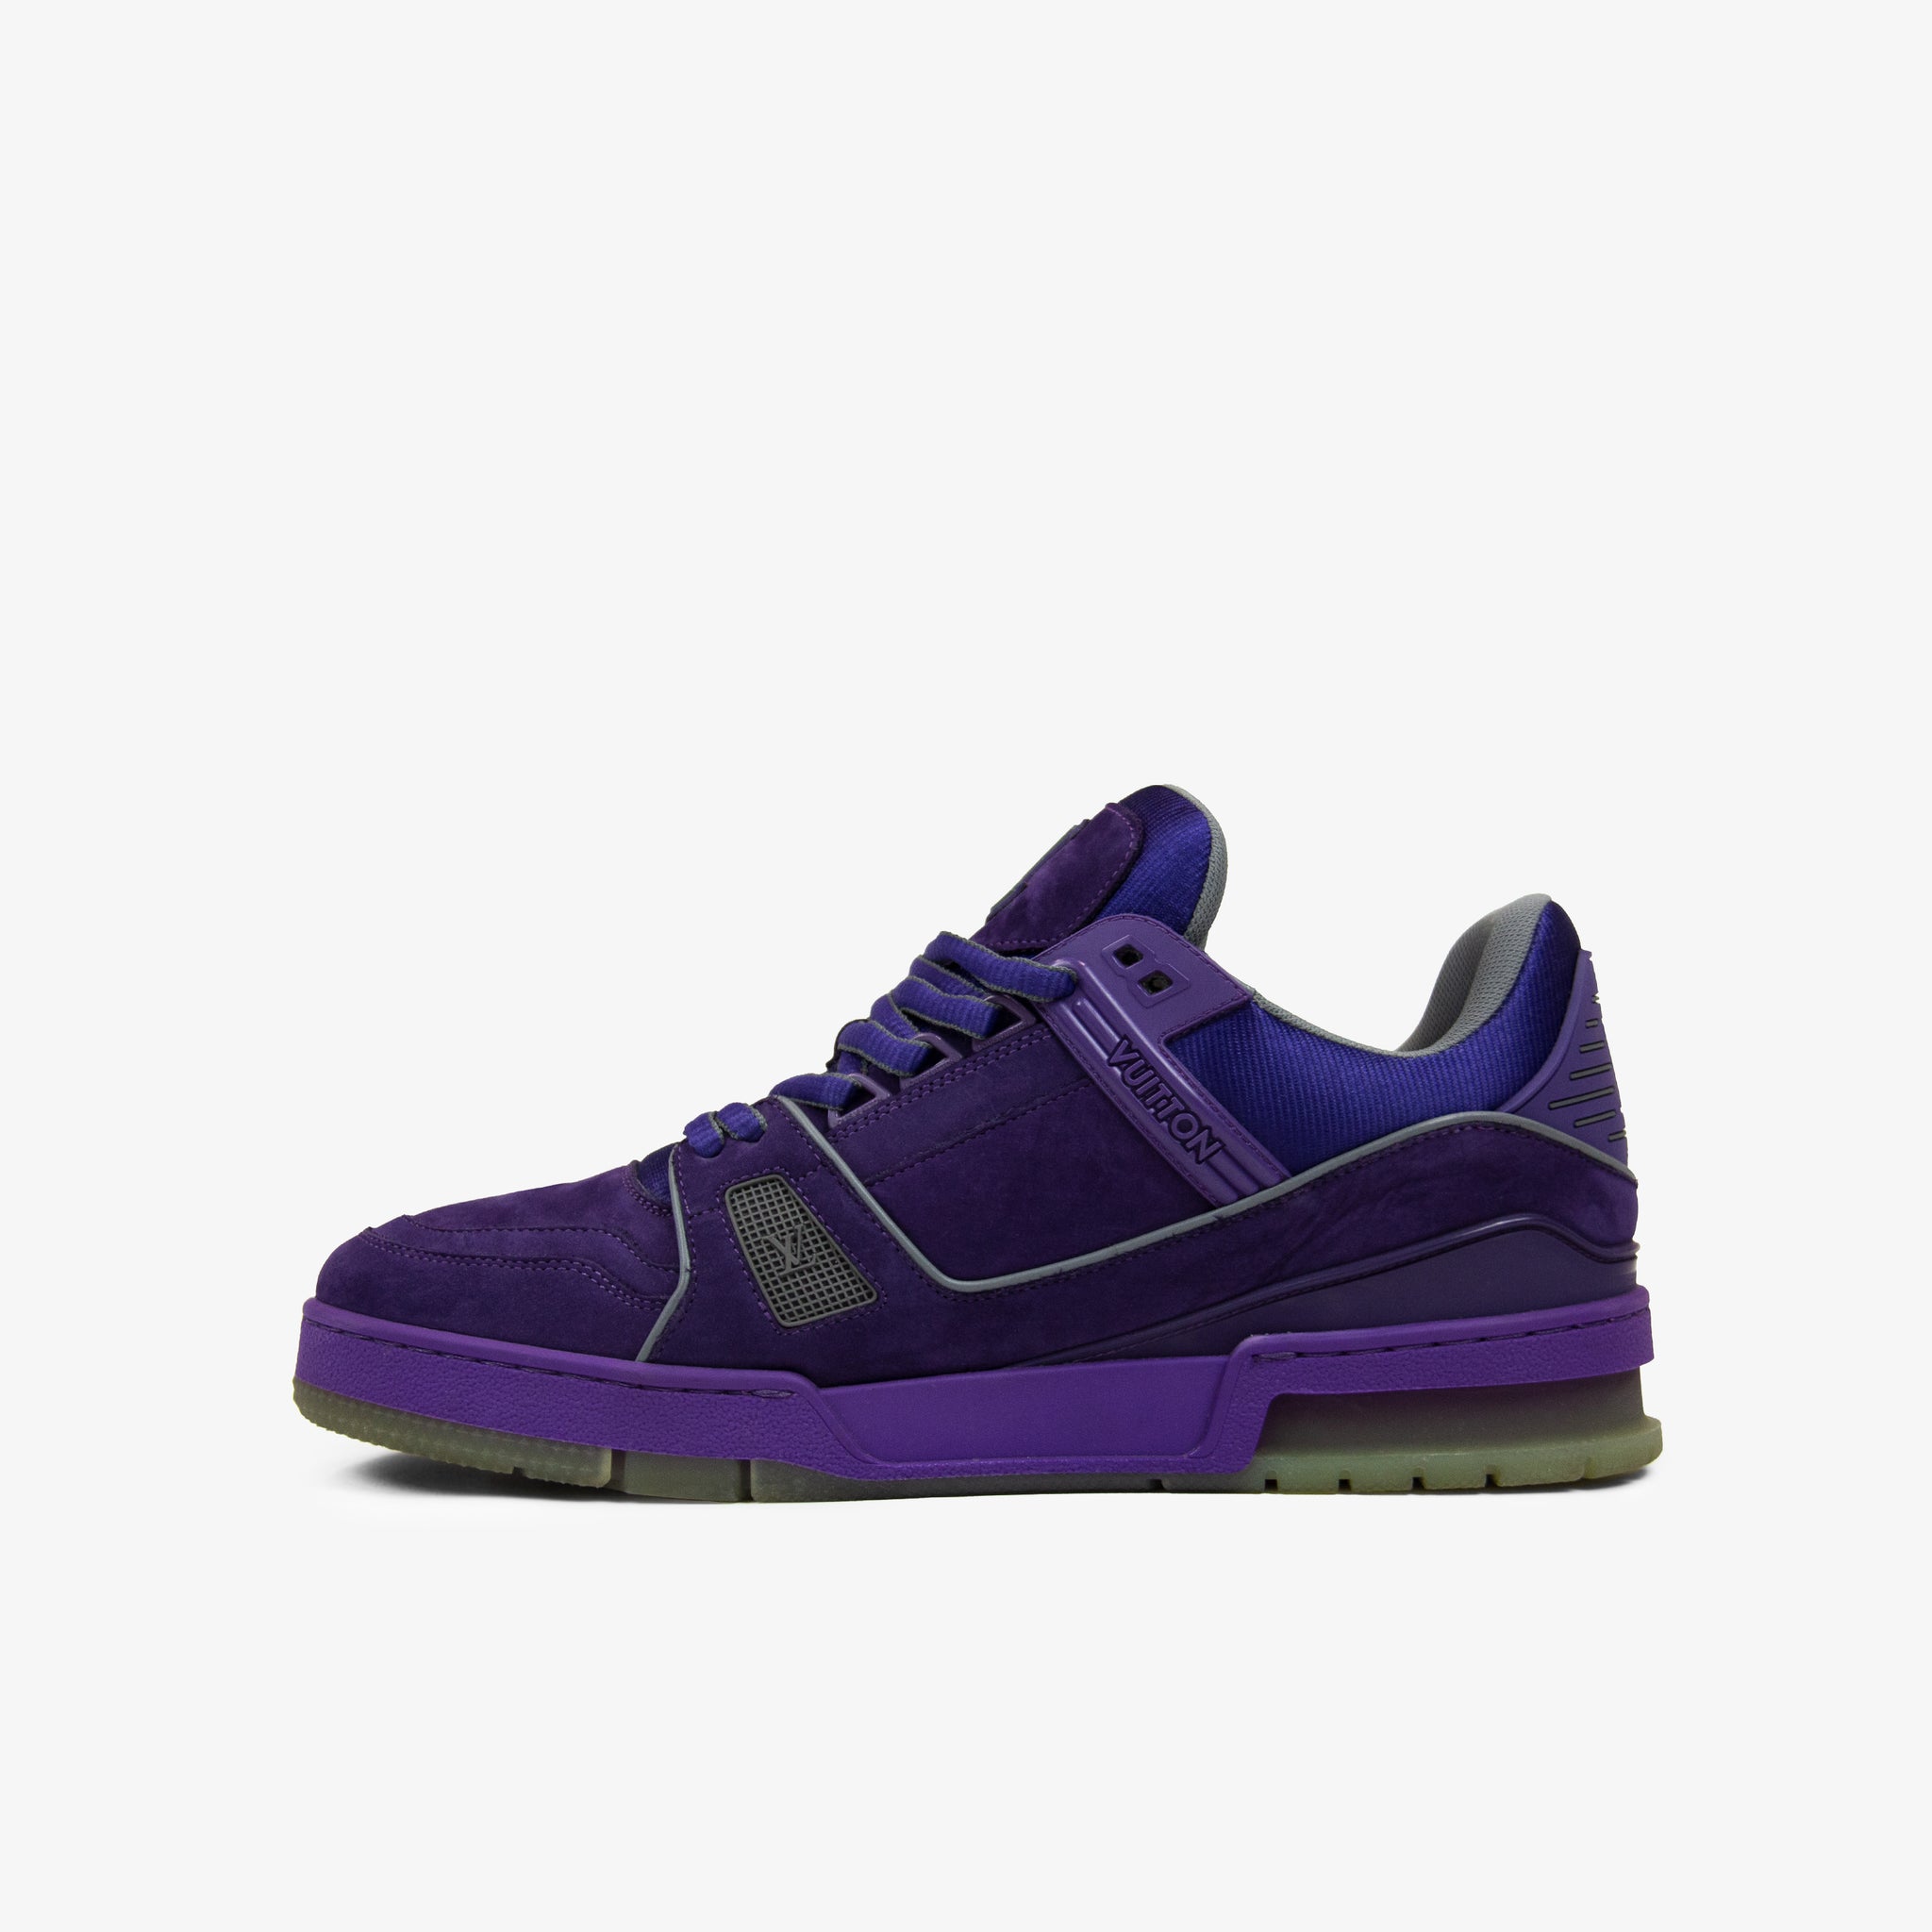 Louis Vuitton LV Trainer Sneaker Violet. Size 13.0